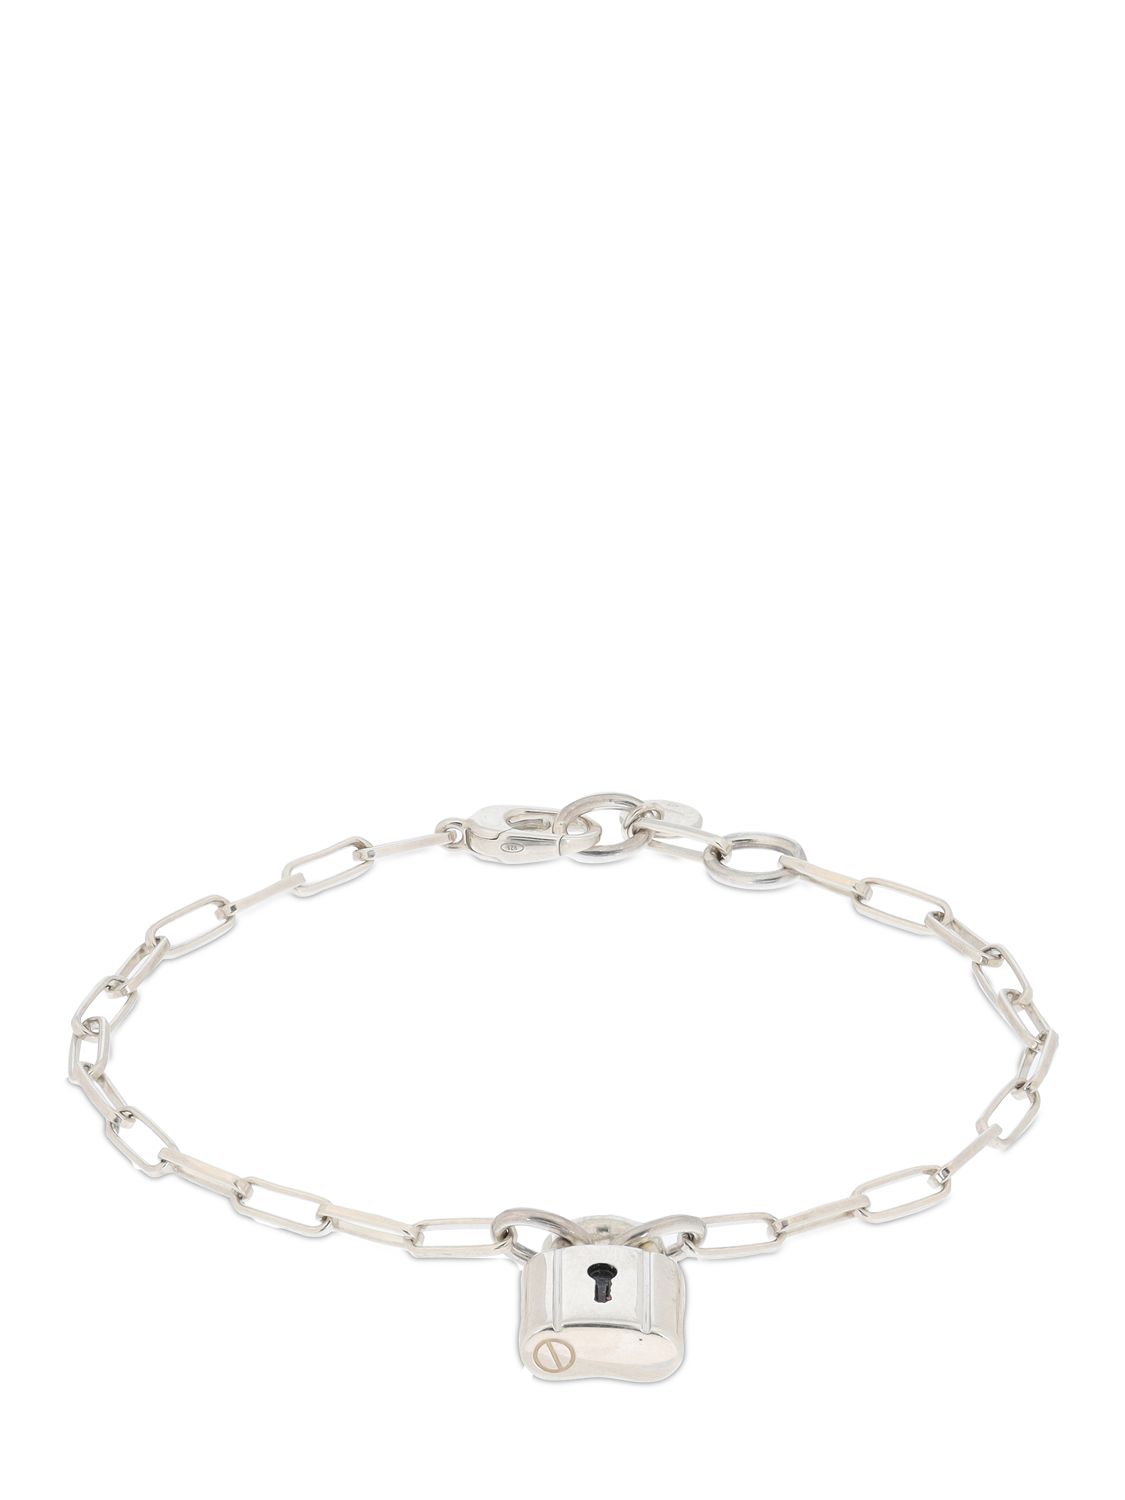 Silver Lock Chain Bracelet